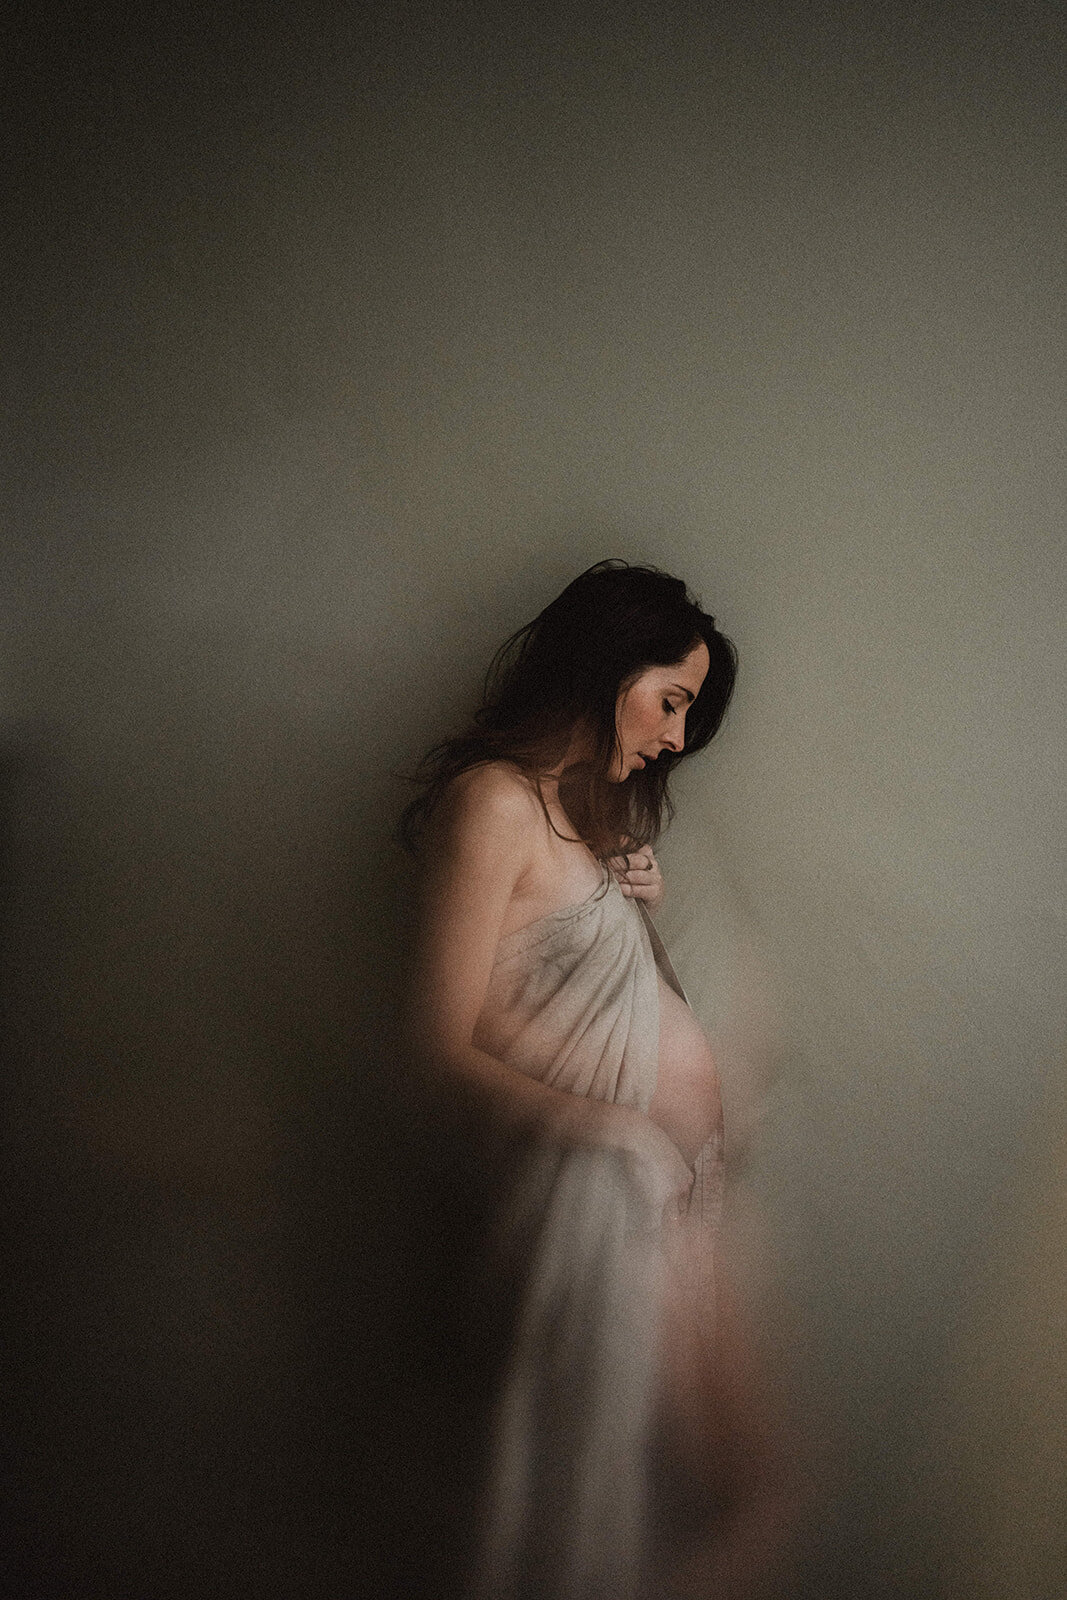 zwangere vrouw, zwangerschapsshoot, intiem portret van een zwangere vrouw